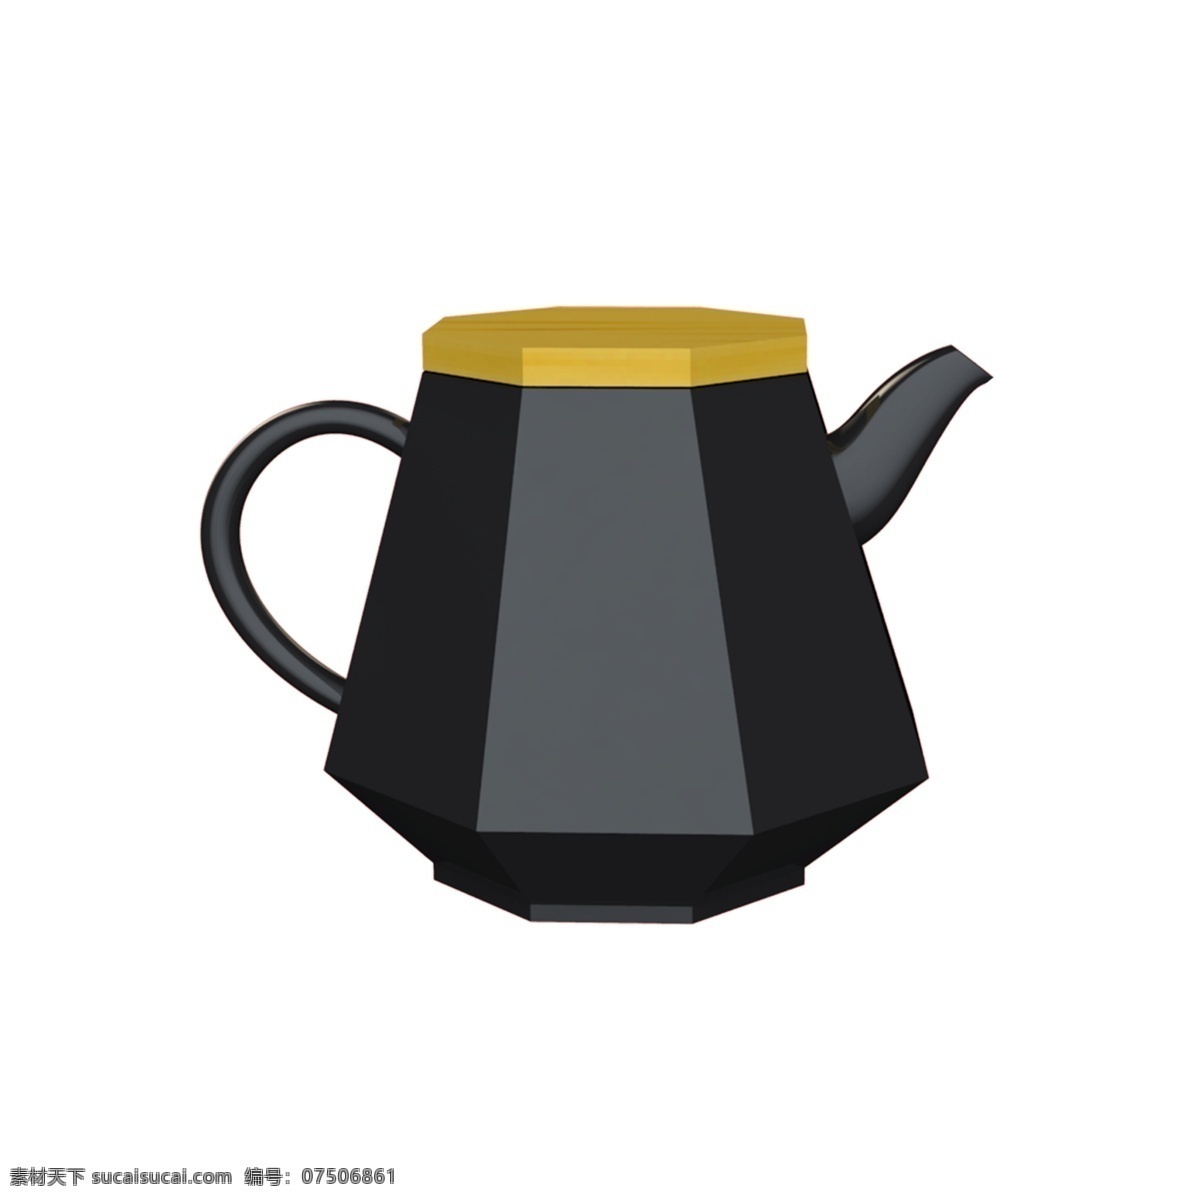 黑色 陶瓷 木 盖 水壶 茶壶 小水壶 小茶壶 六边形水壶 陶瓷水壶 几何形水壶 喝水 泡茶 养生 茶具